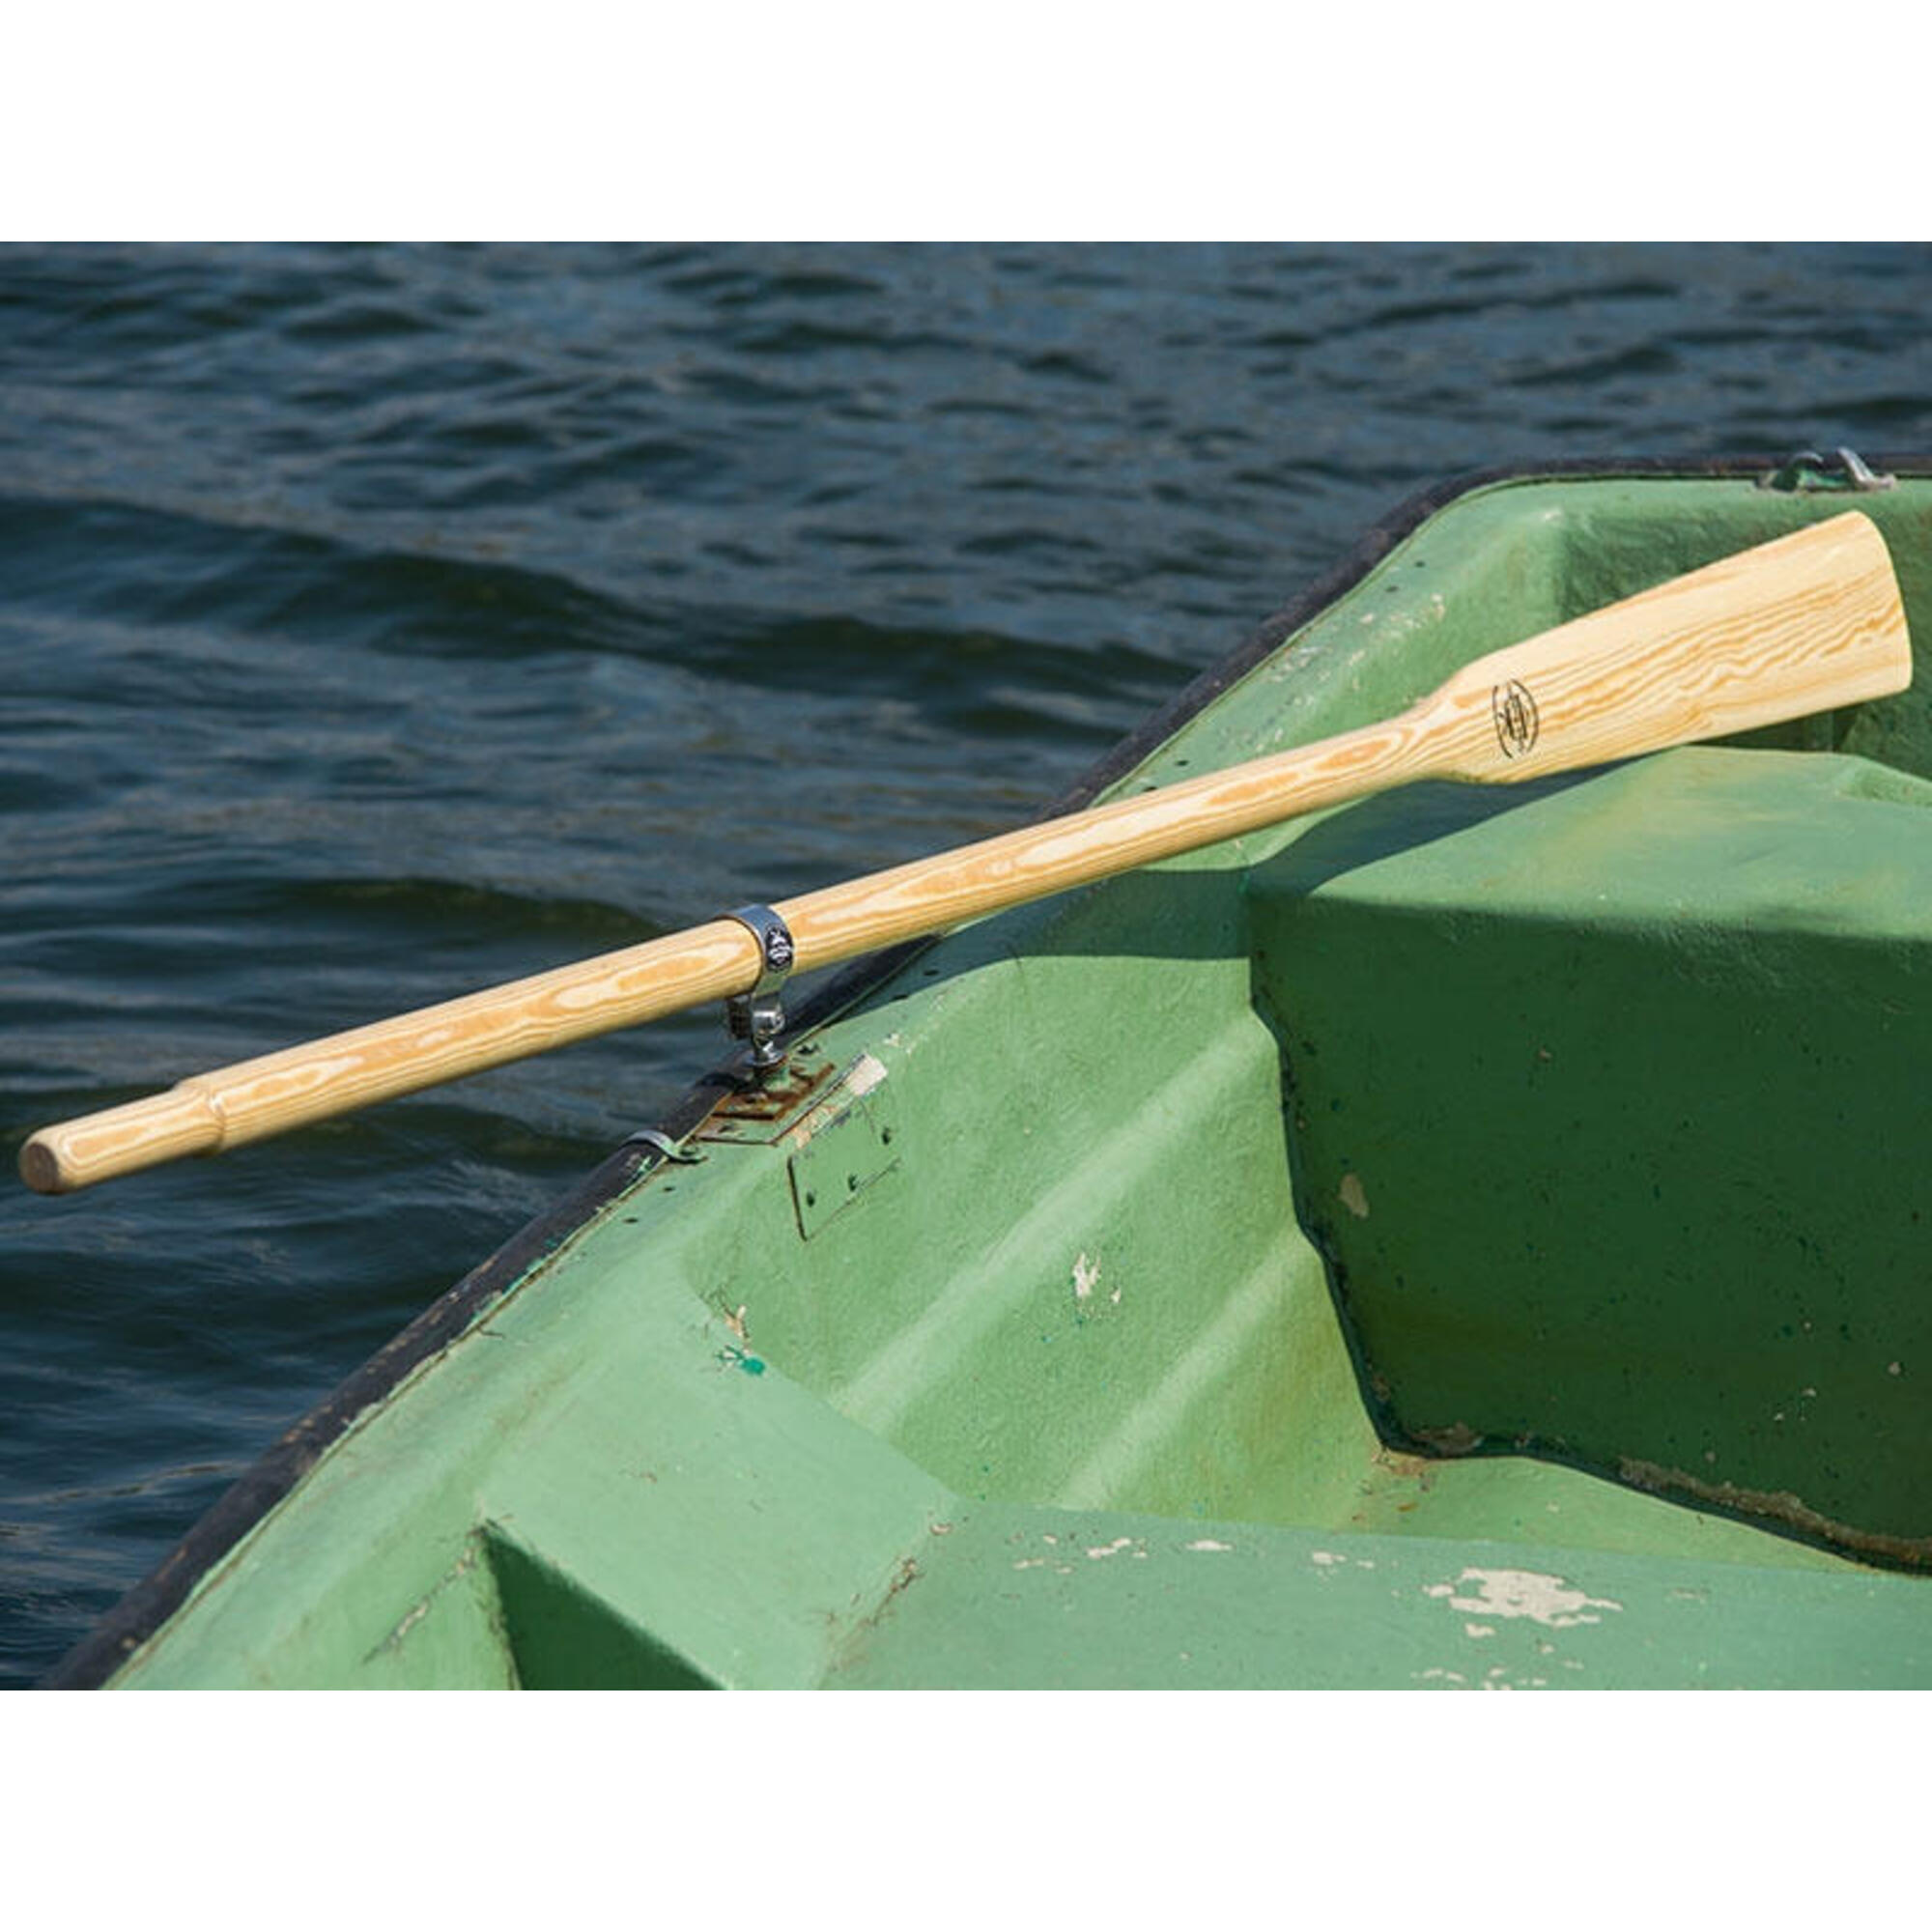 Wiosła szalupowe do łodzi 165-180 + dulki pałąkowe + osłony 40mm